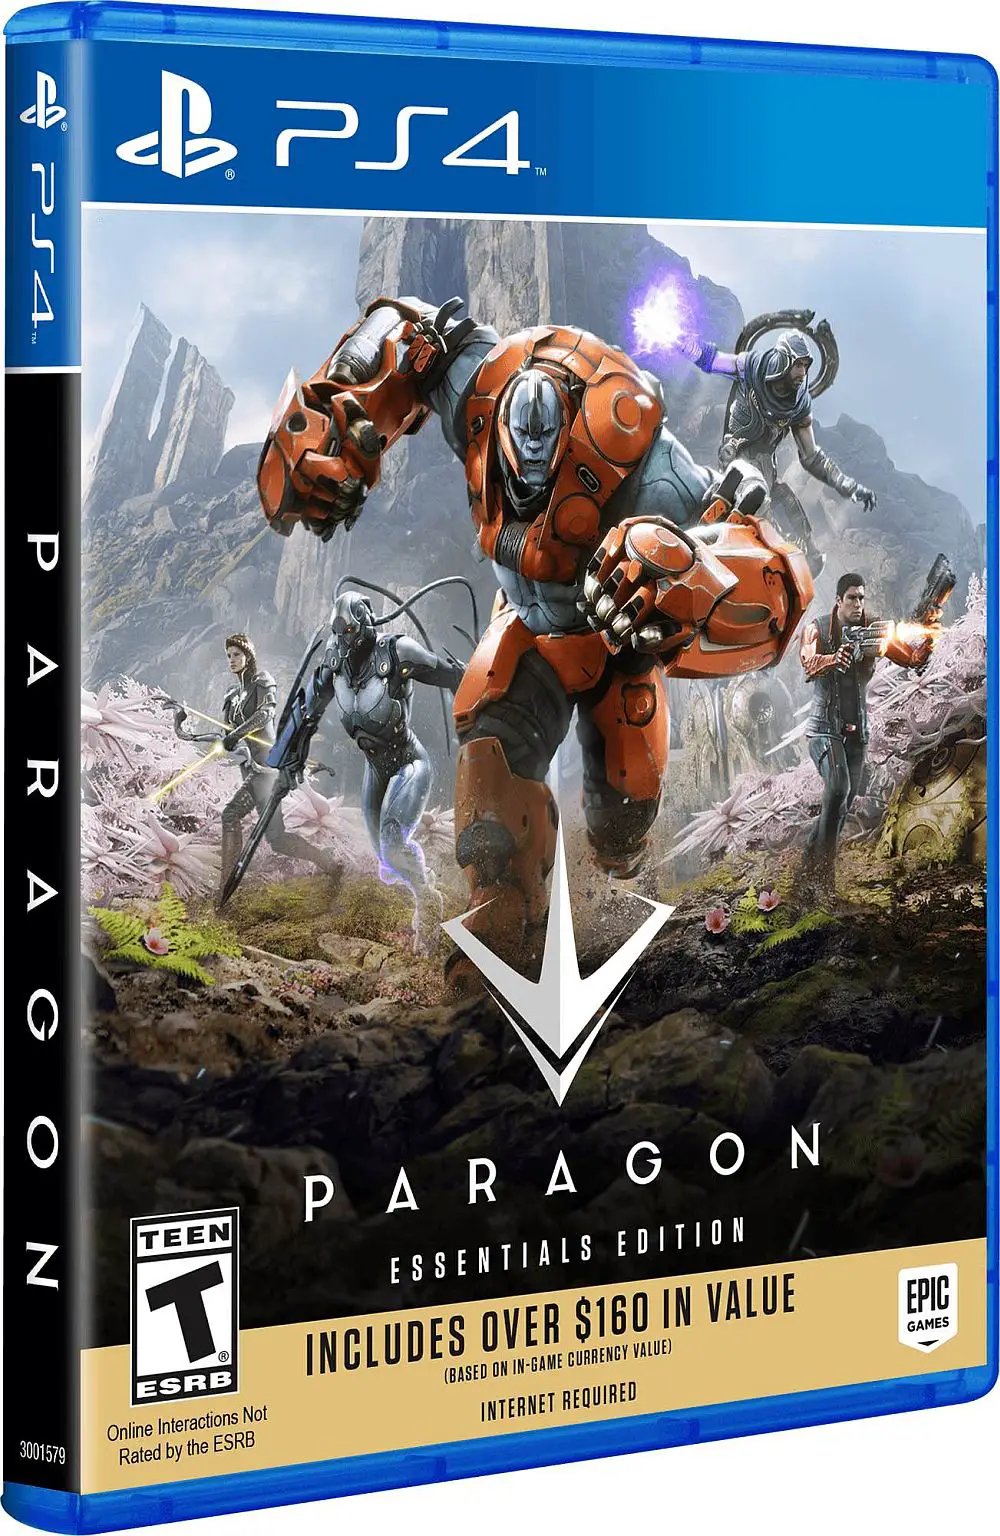 Paragon Essentials Edition es un disco de juego para PS4